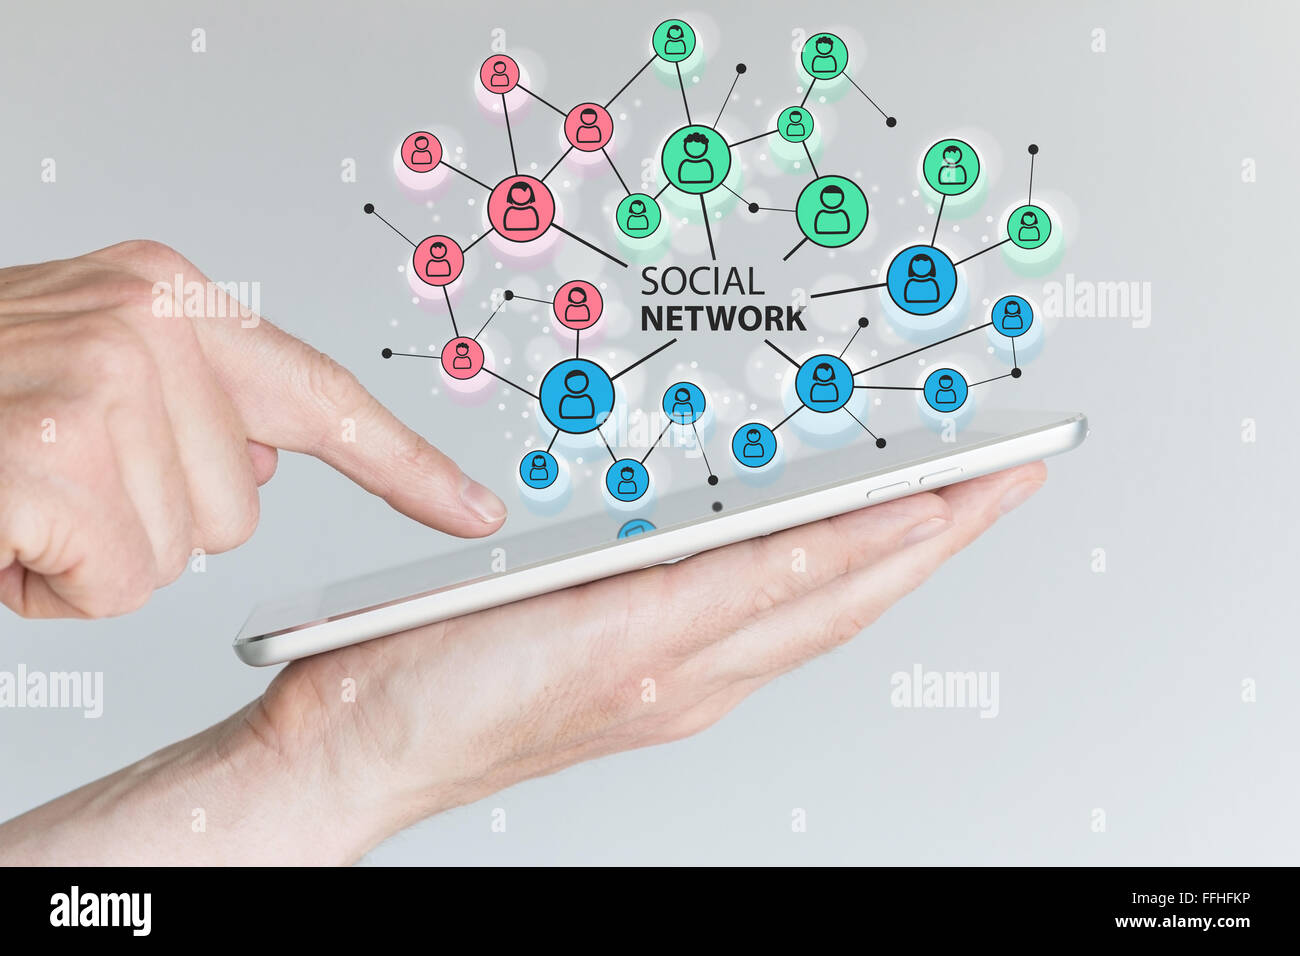 Concept de réseau social pour connecter les amis, les familles et la main-d'œuvre mondiale Banque D'Images